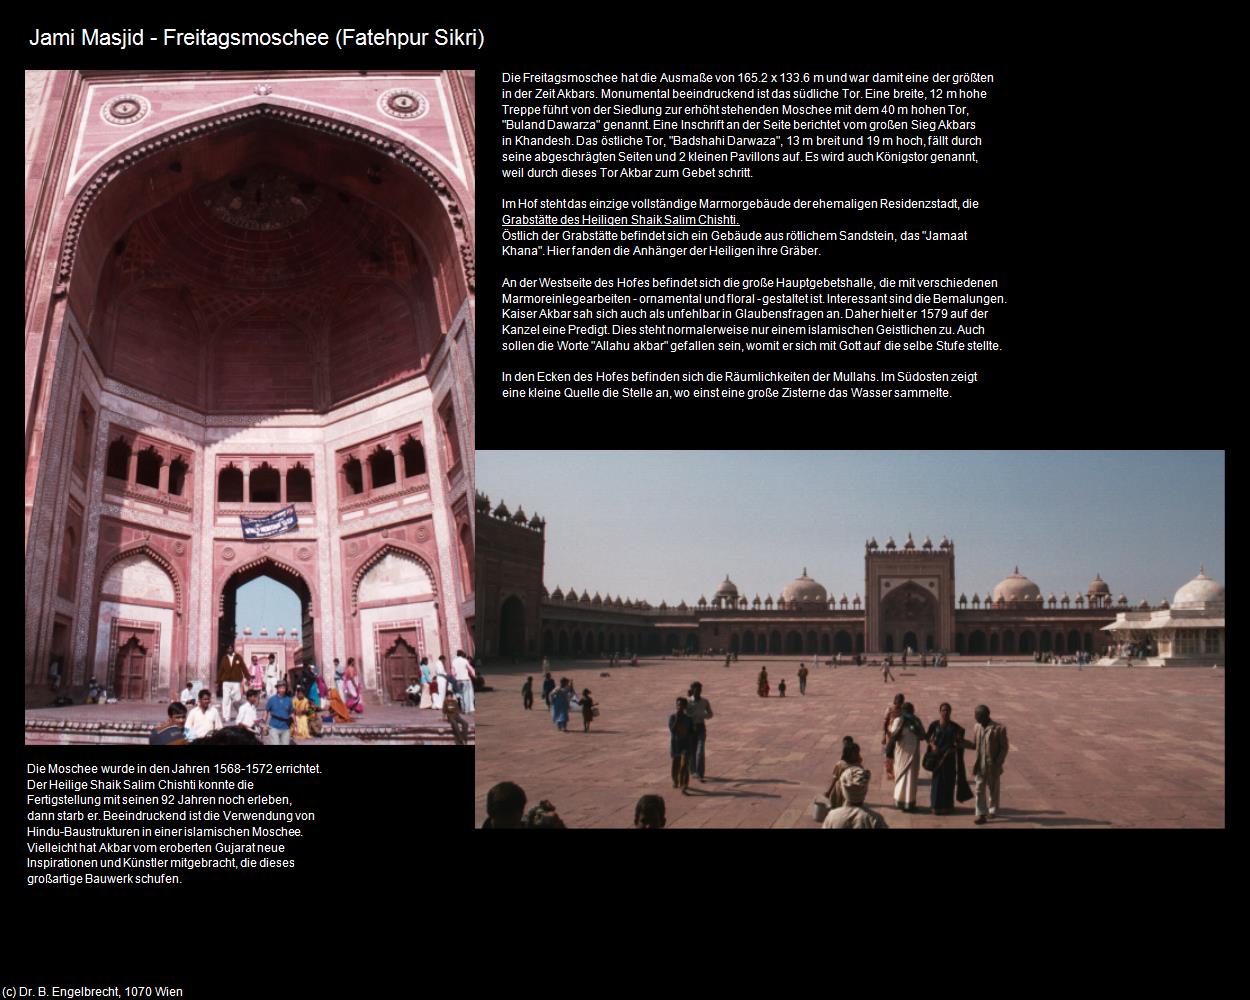 Jami Masjid - Freitagsmoschee (Fatehpur Sikri) in Rajasthan - das Land der Könige(c)B.Engelbrecht